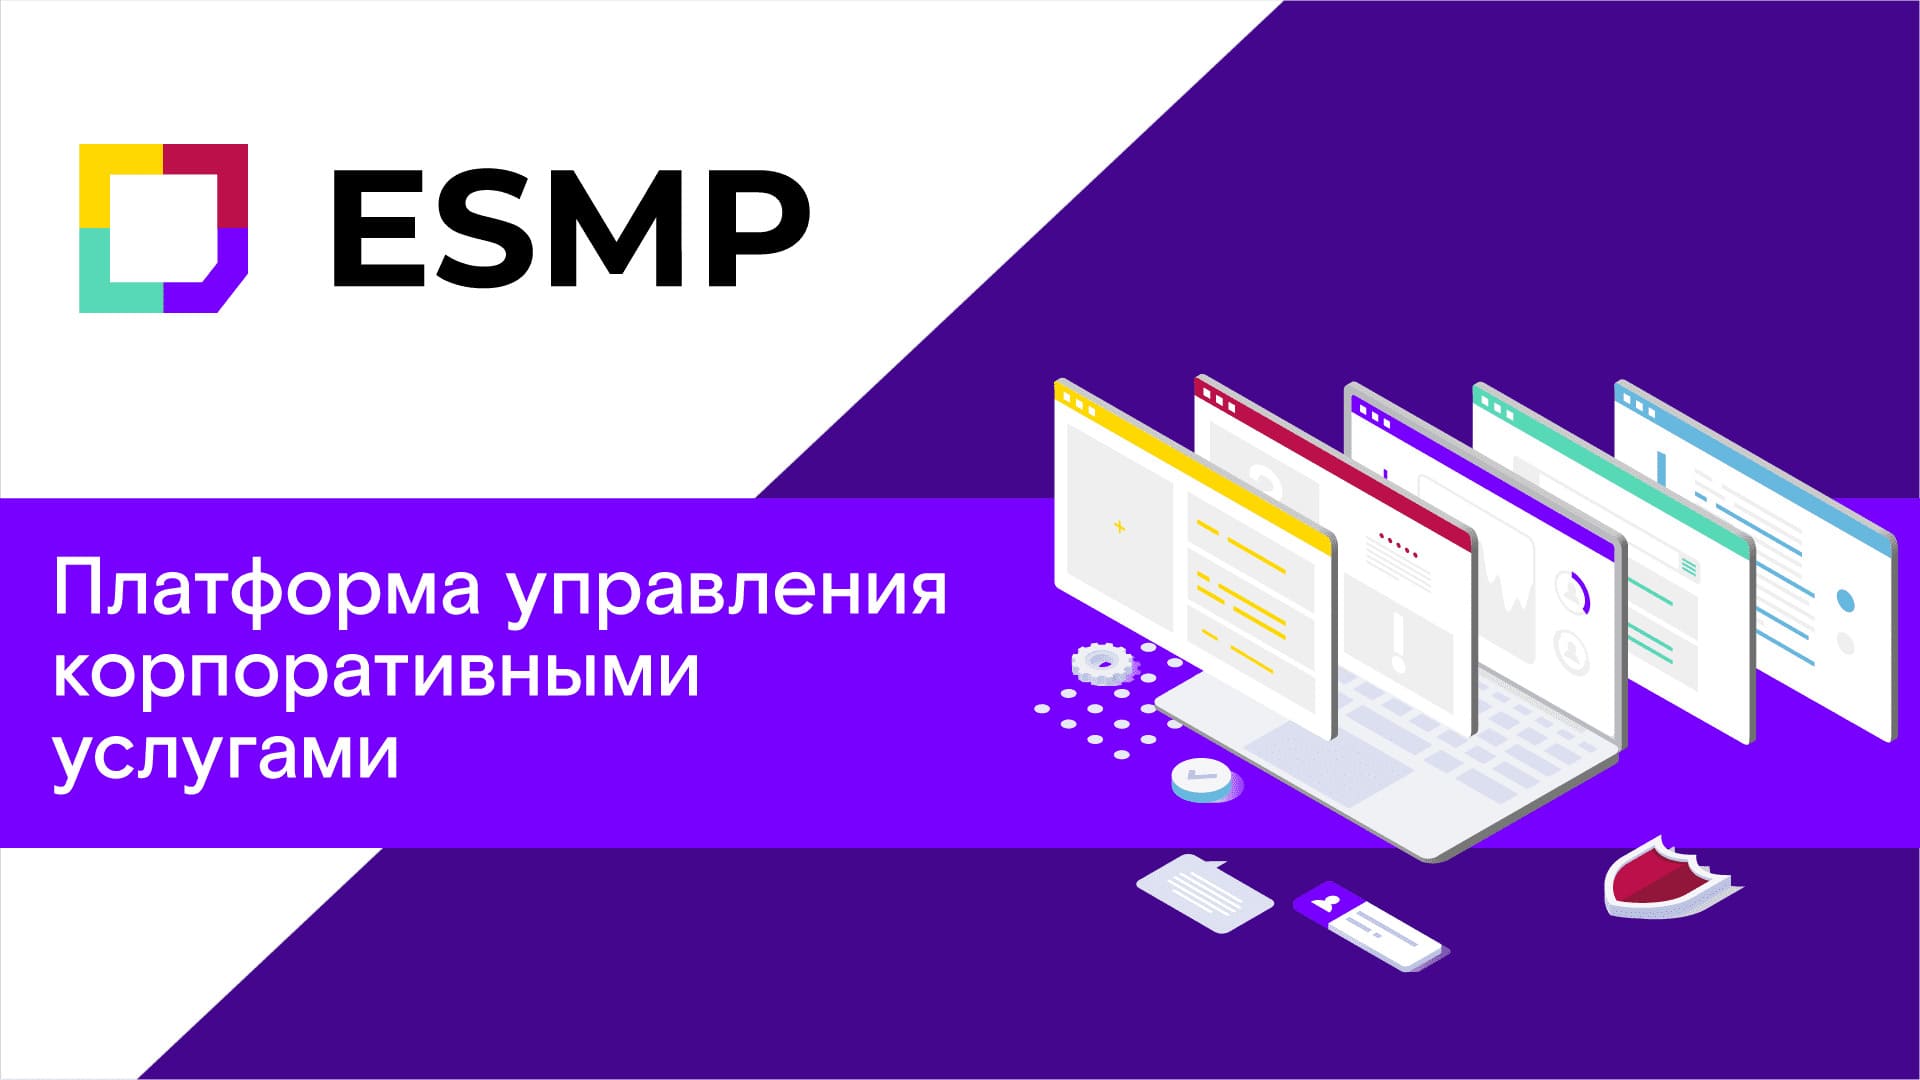 ESMP — платформа управления корпоративными услугами